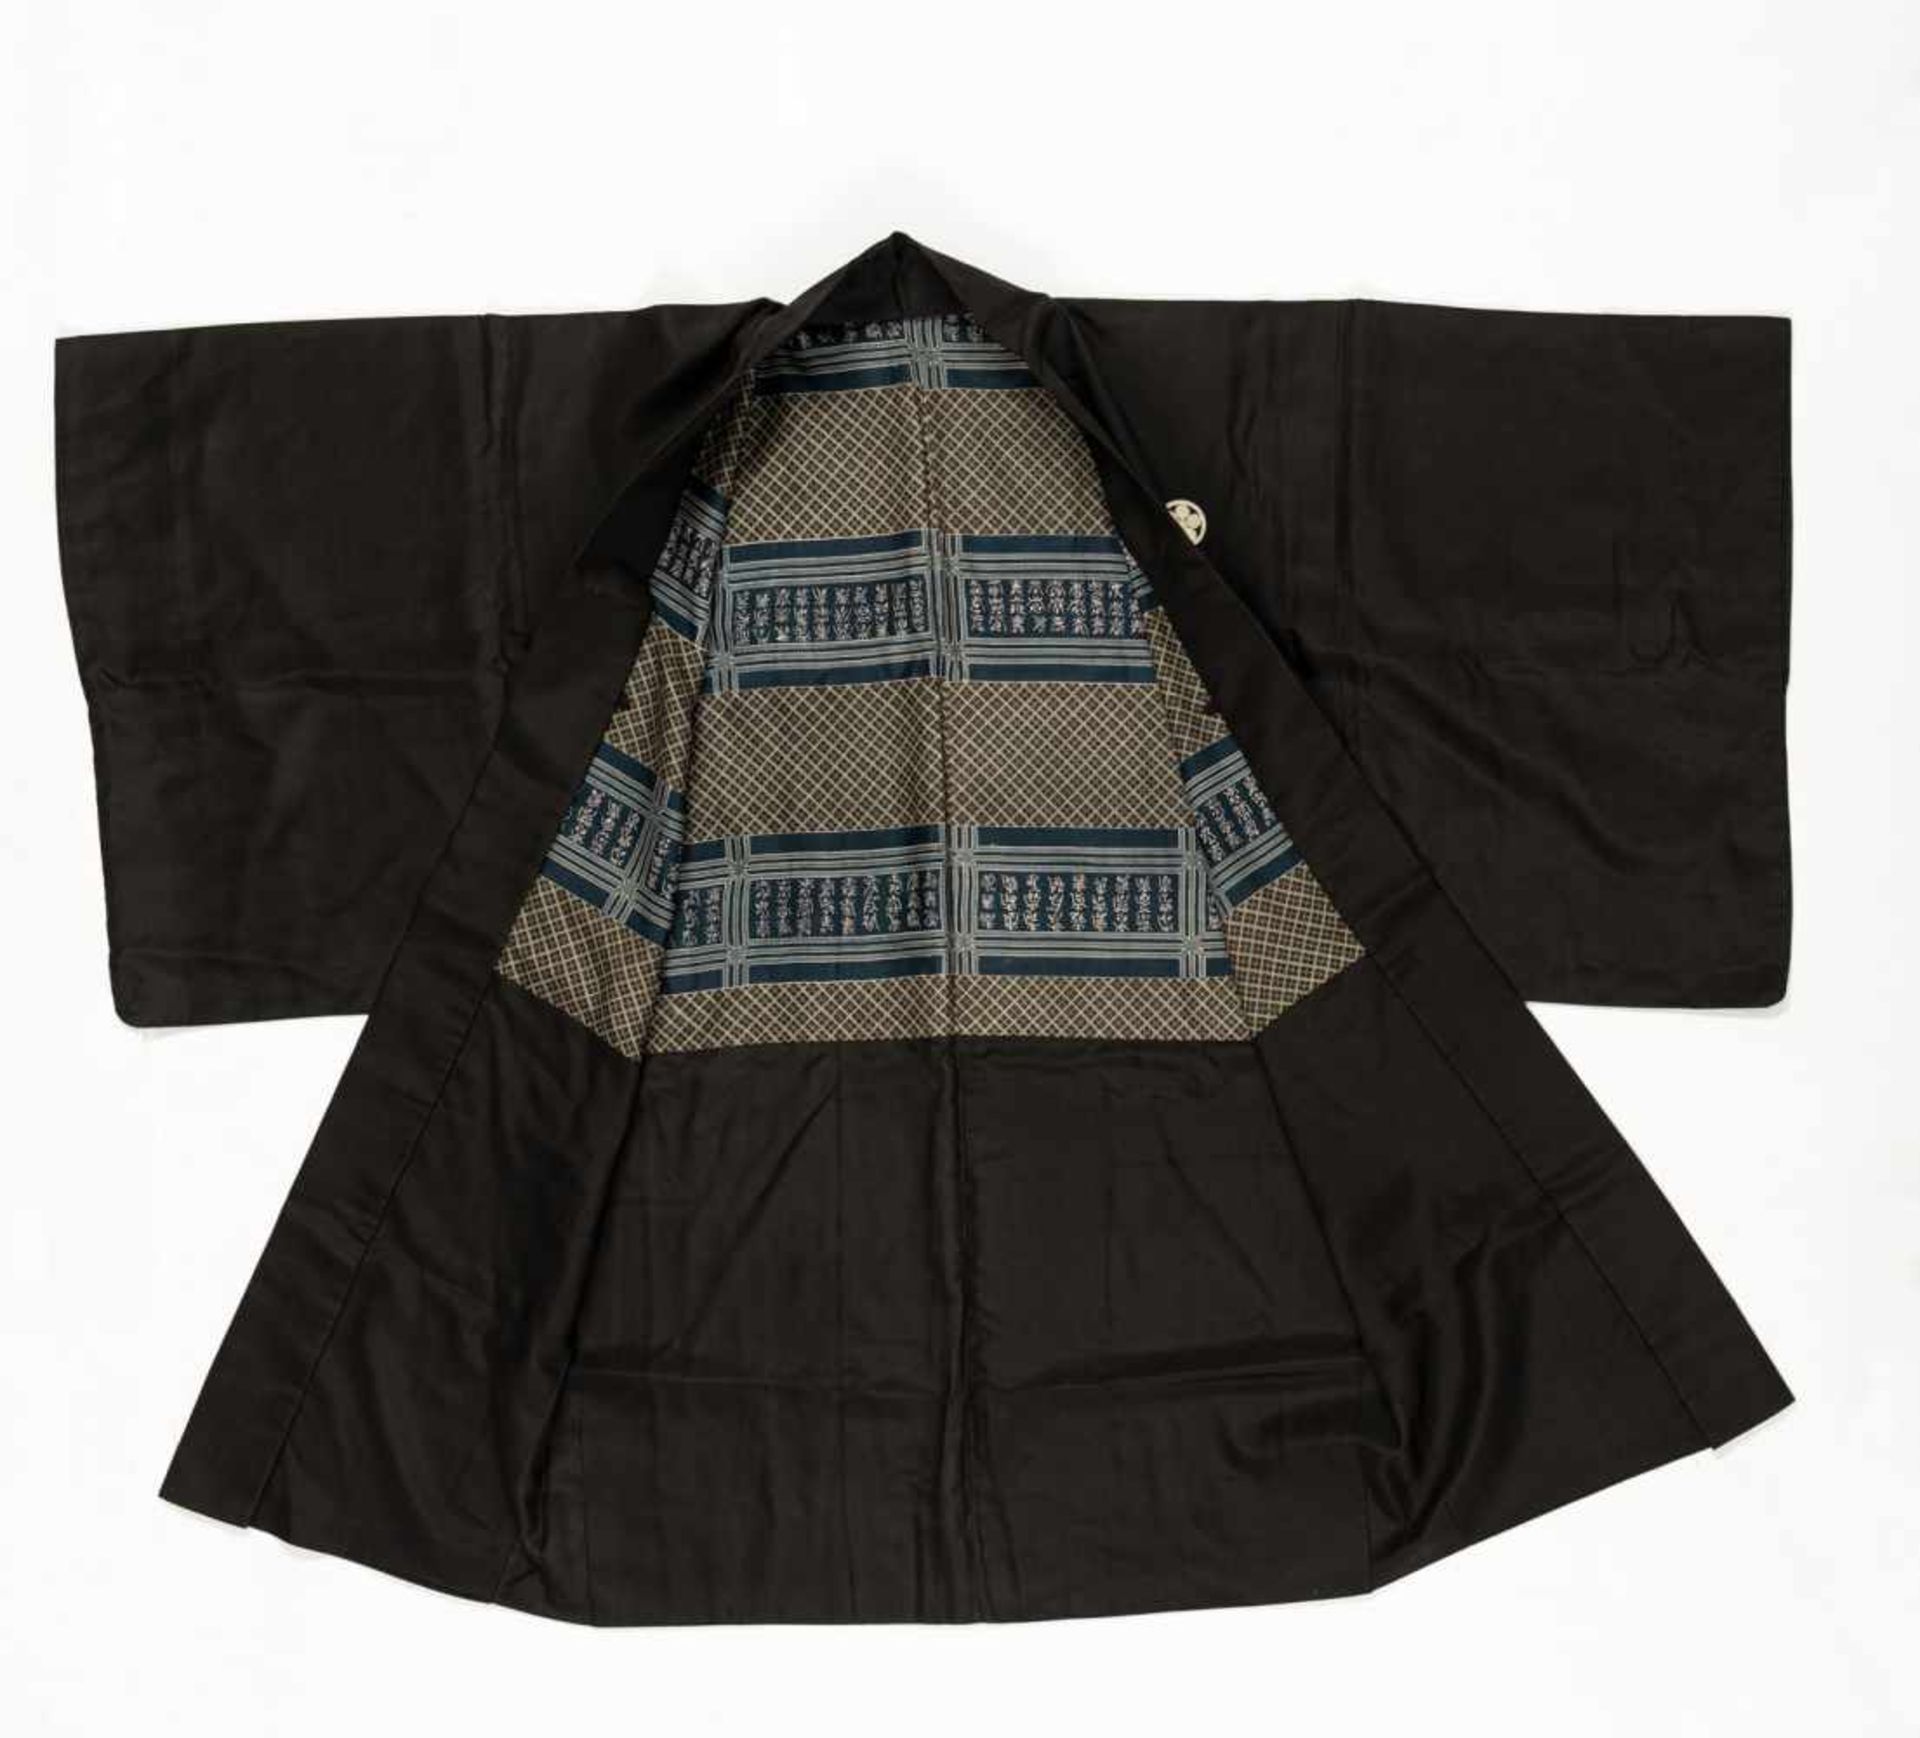 Drei Kimono mit Wappen, Schwerthülle, Hose teils in Seidenbrokat und Seide gearbeitet - Bild 7 aus 16